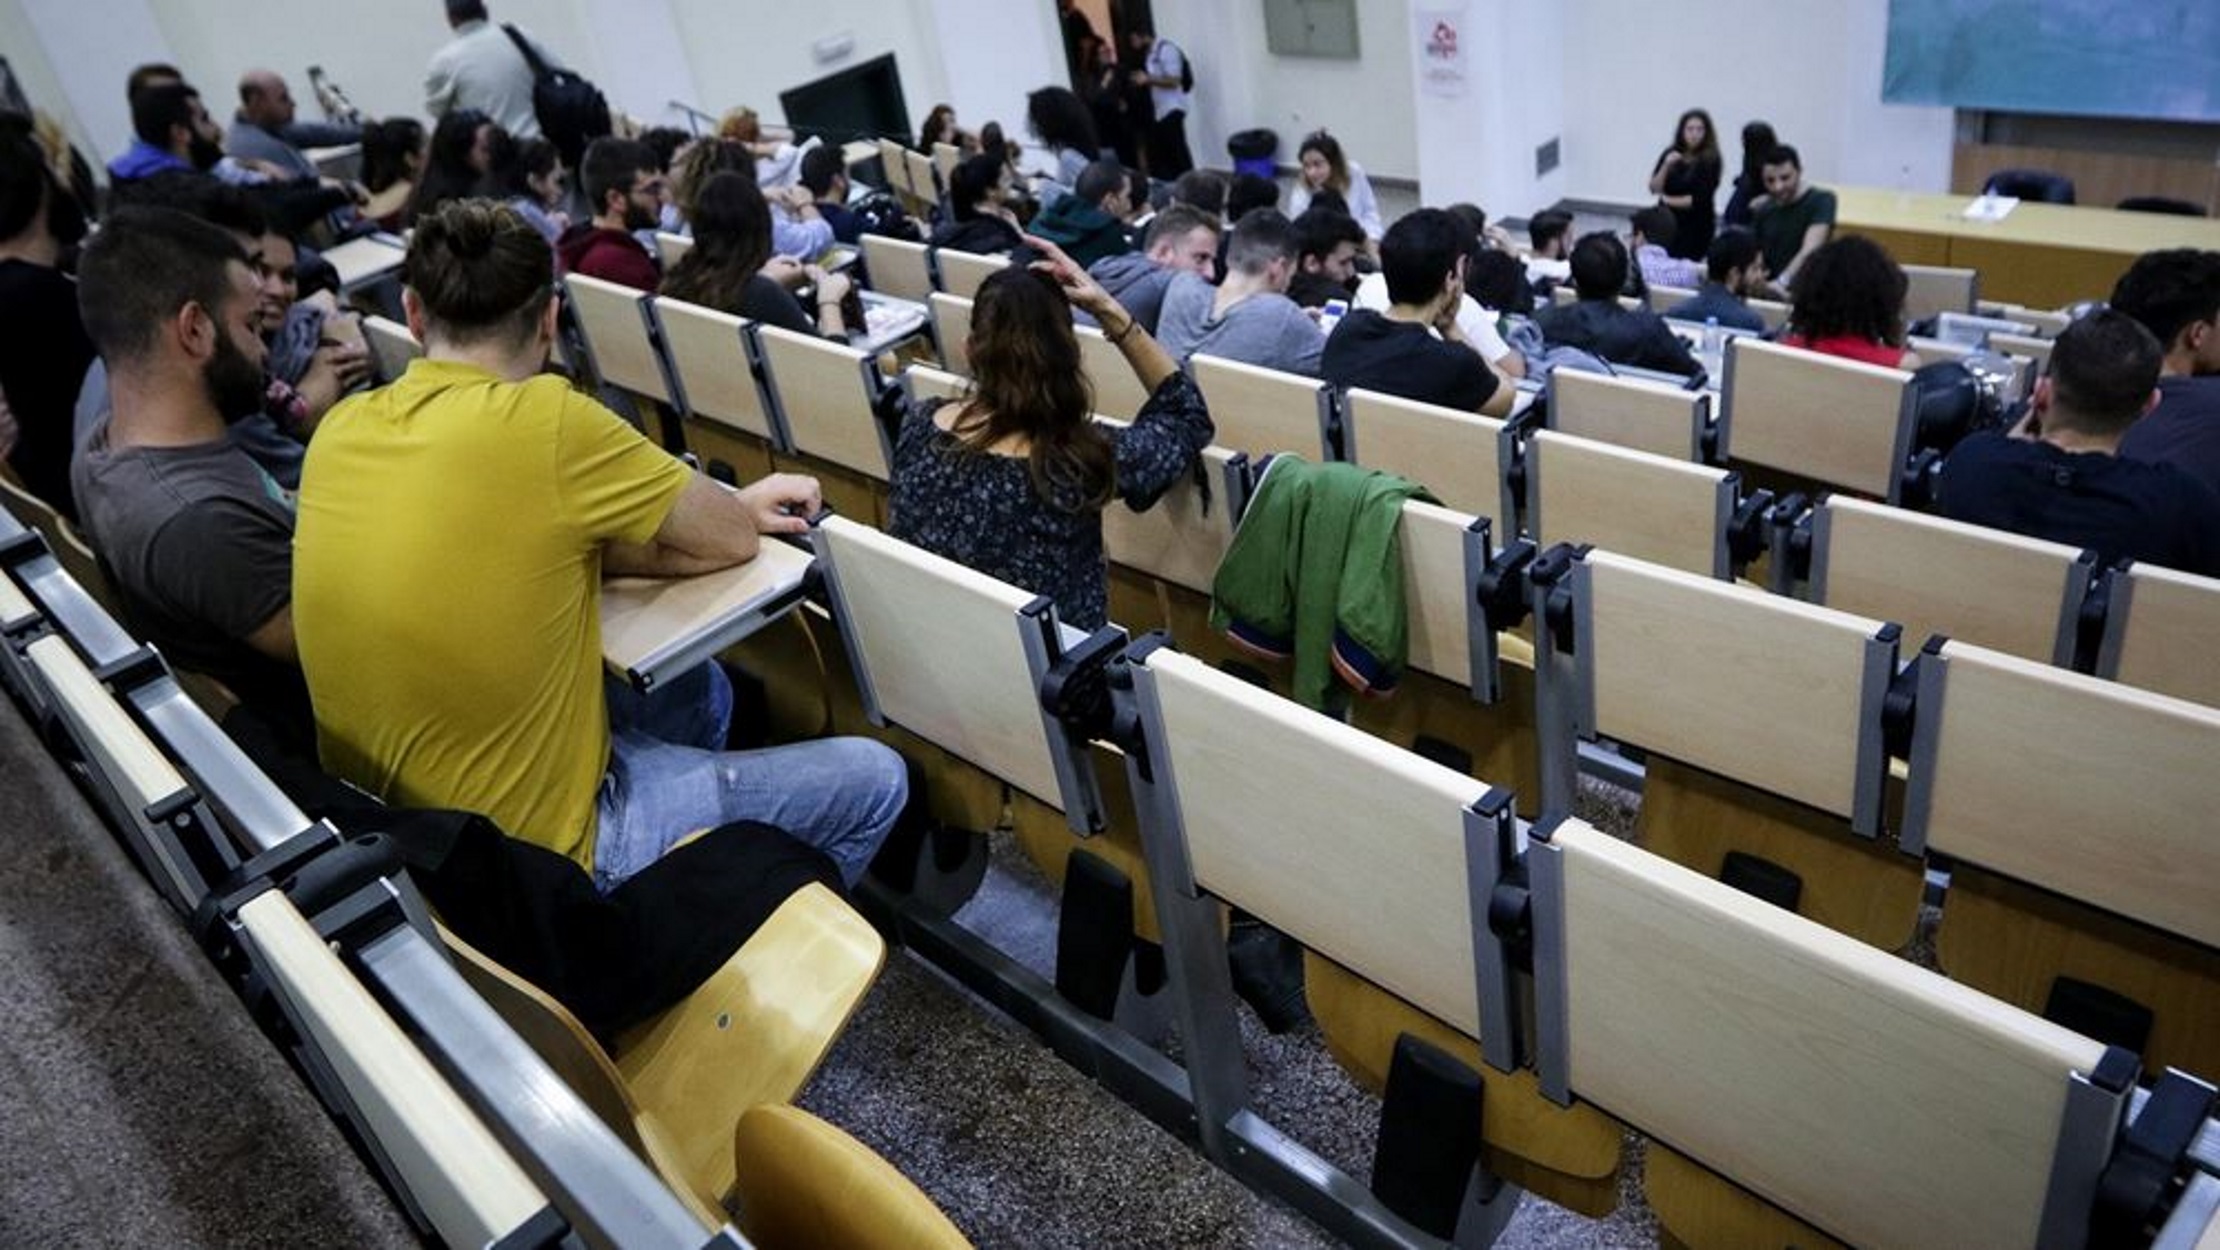 Πανεπιστήμια – Κορονοϊός: Στα έδρανα από σήμερα οι φοιτητές – Ποια ανοίγουν την επόμενη εβδομάδα